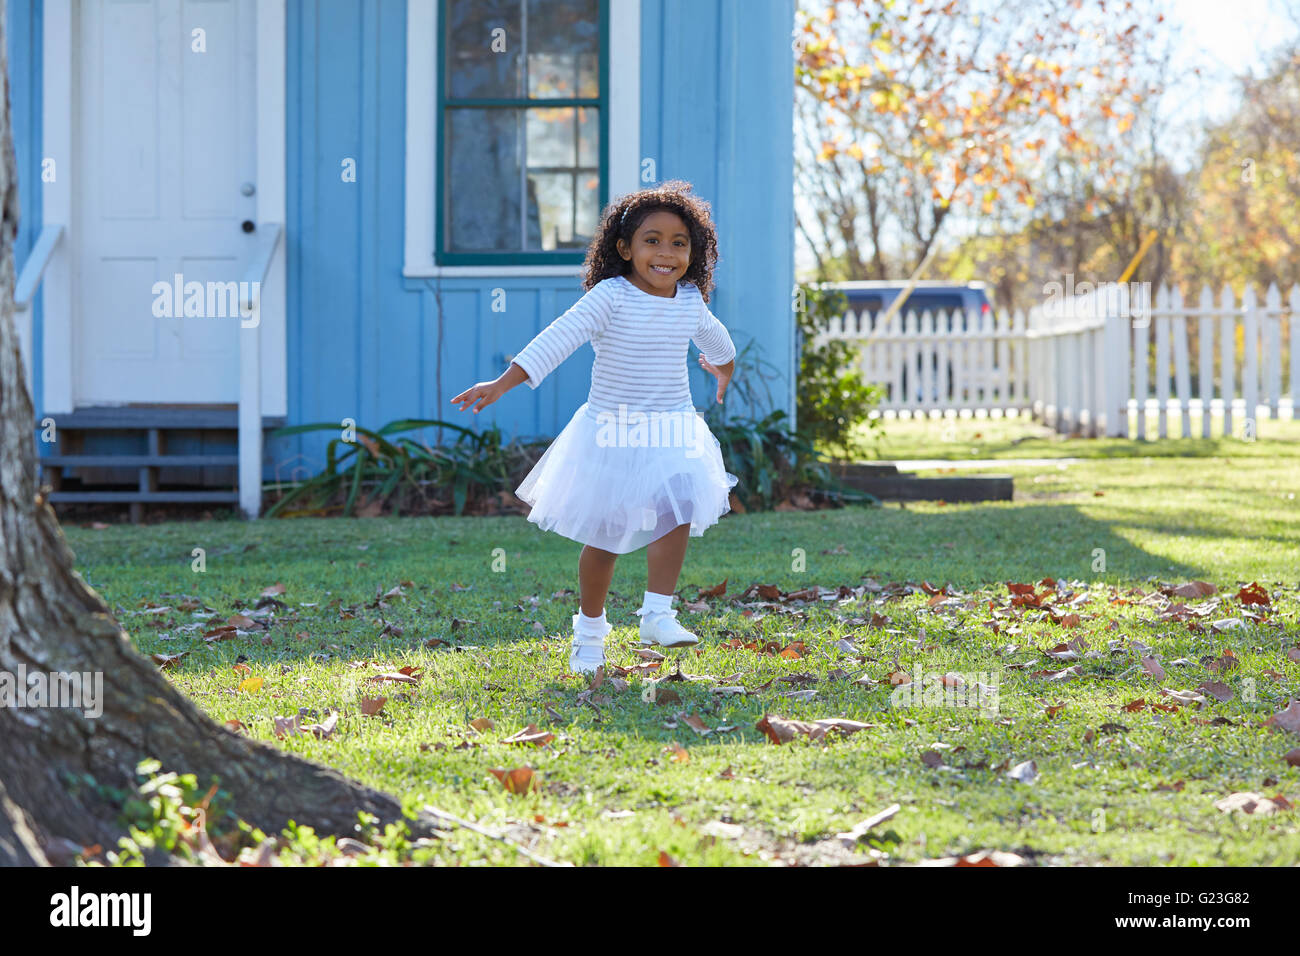 Niño Niño niña vestido blanco corriendo en jardín América etnicidad Foto de stock